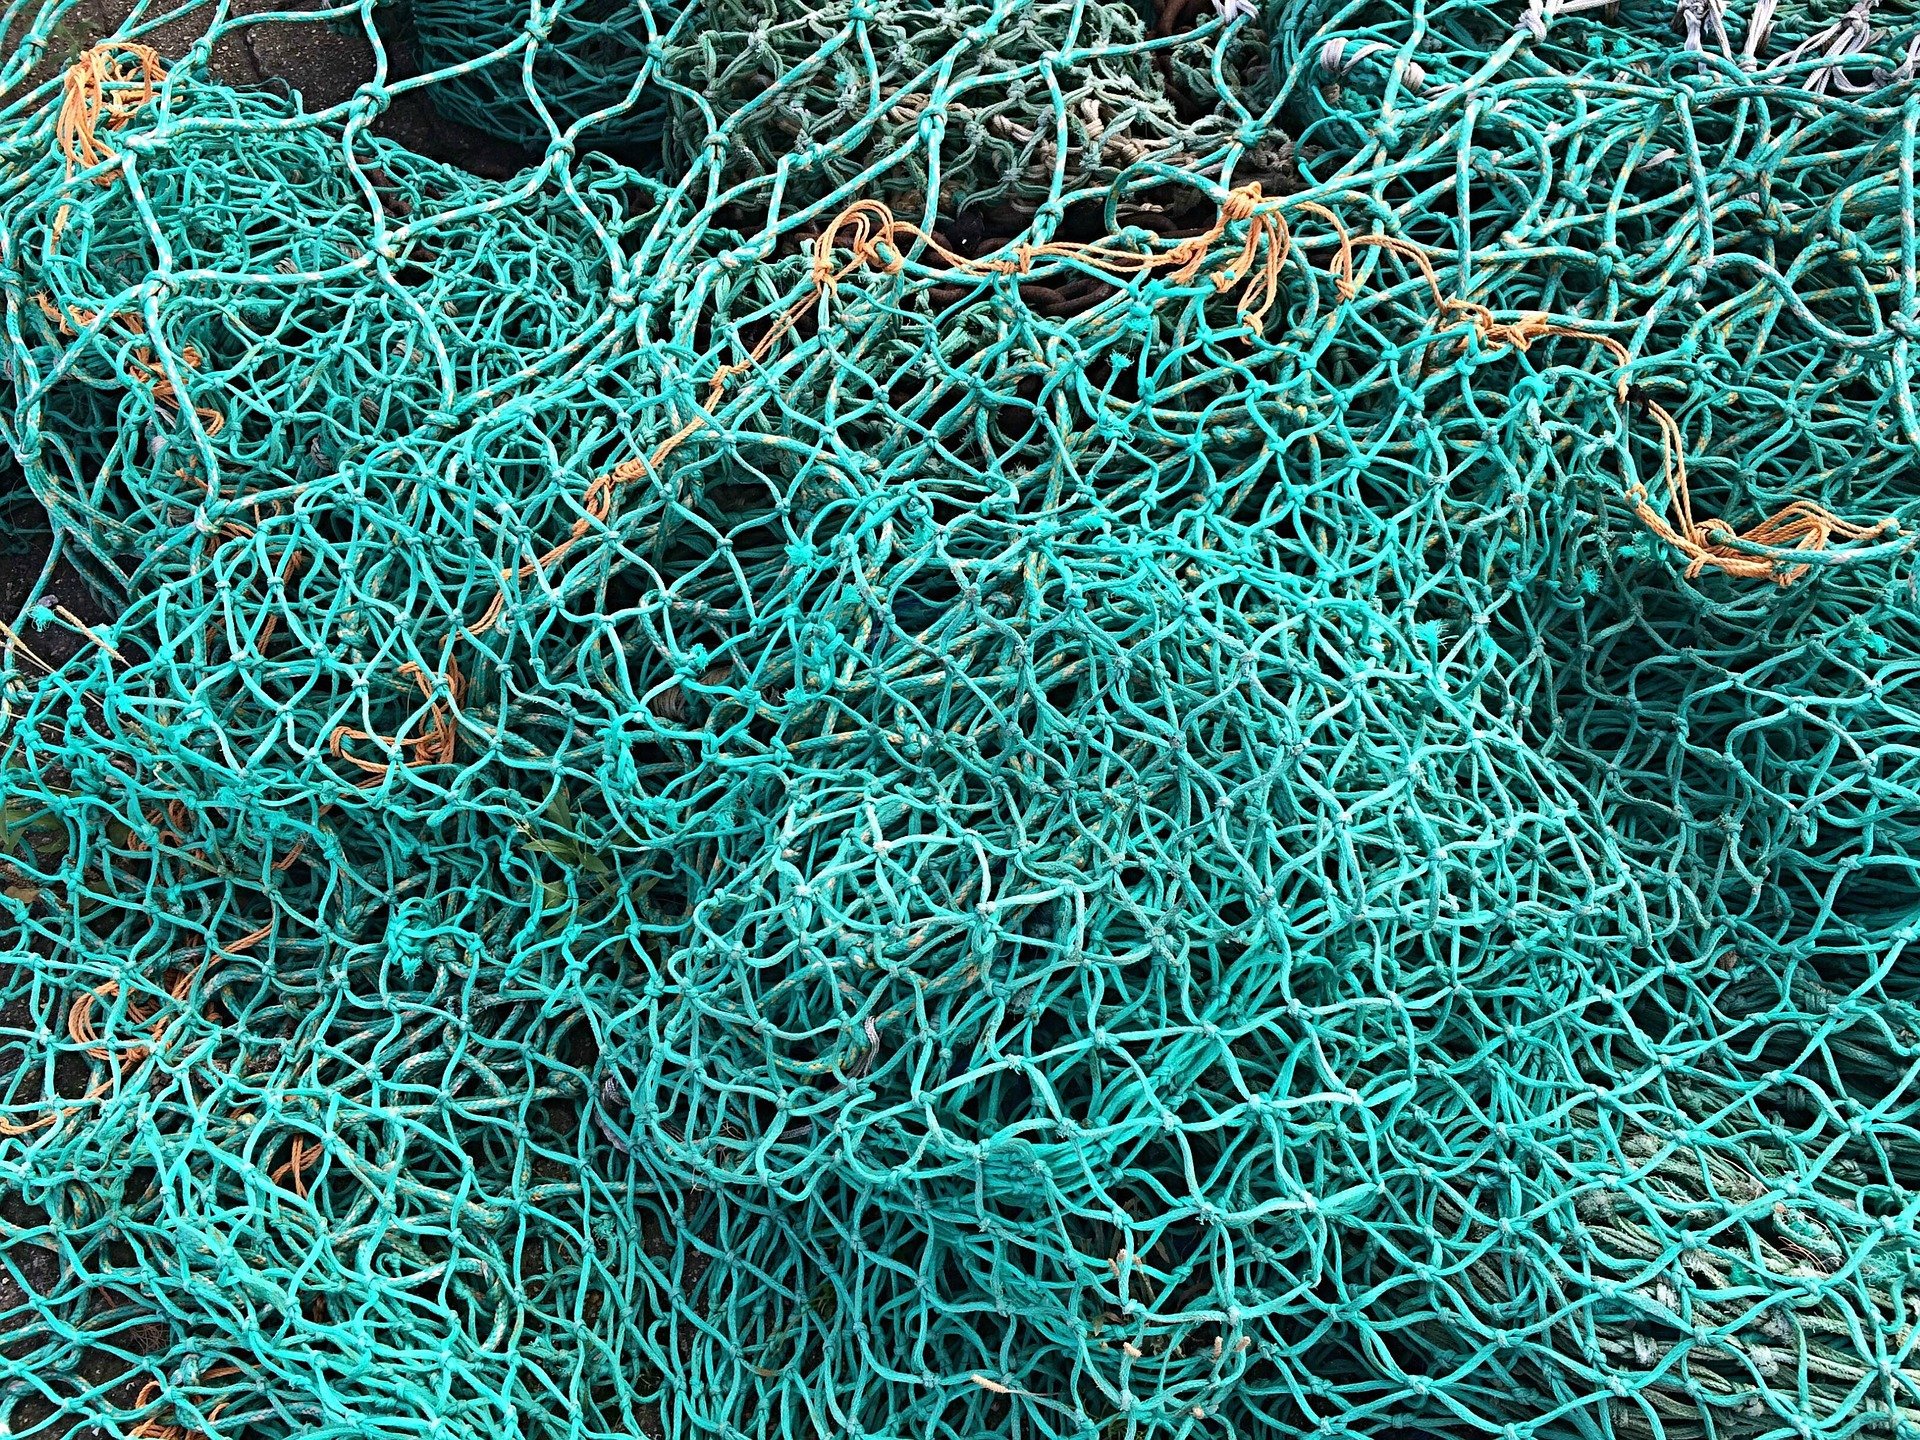 Fischernetze